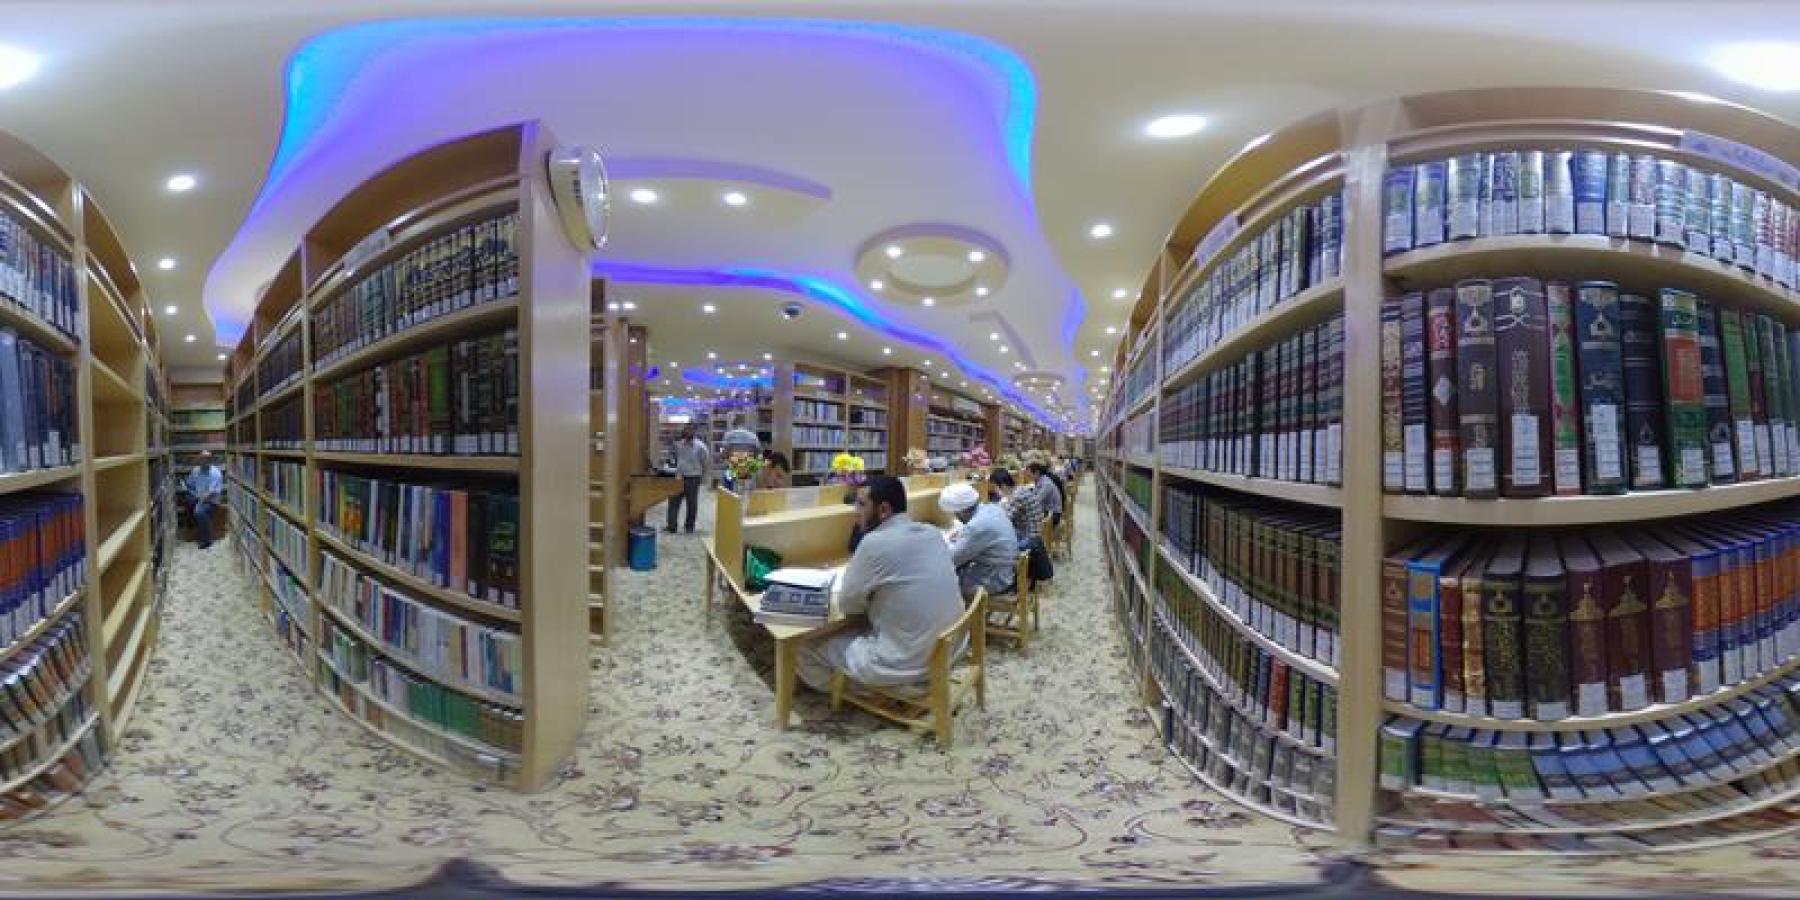 وحدة التصوير في العتبة العلوية المقدسة تصور رقمياً  أكثر من (6000) كتاب وبحث ورسالة جامعية  